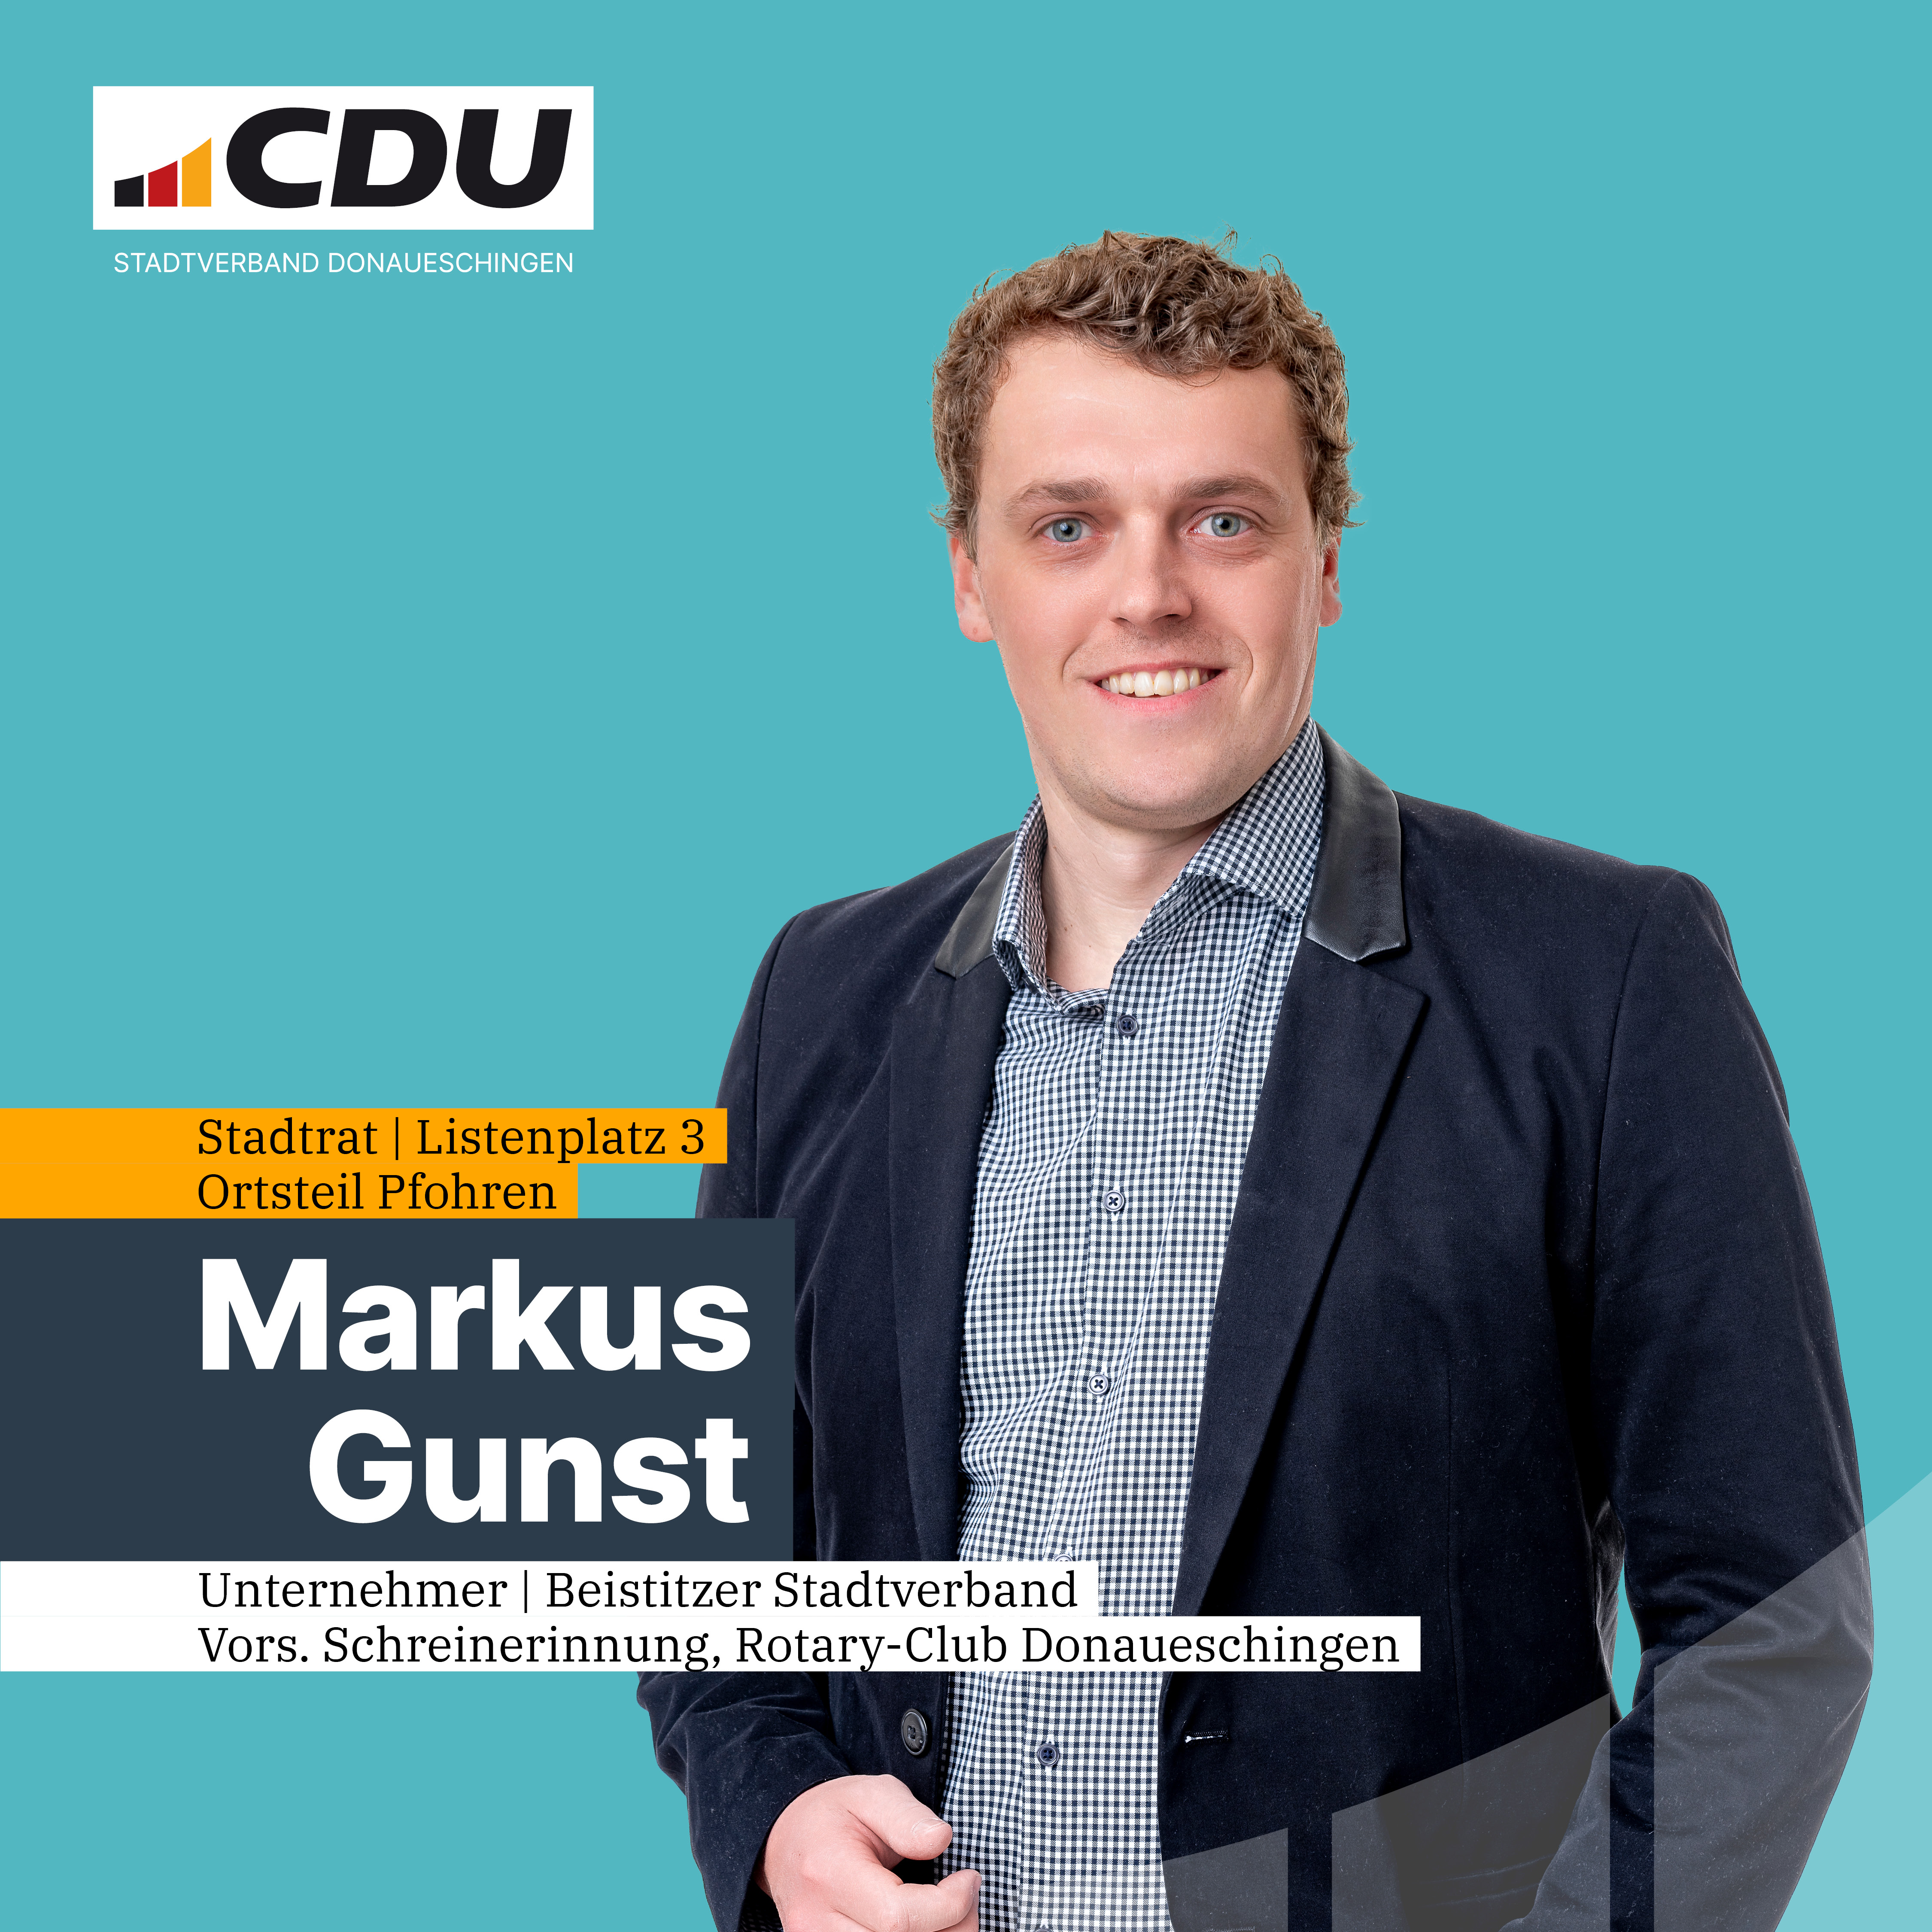  Markus Gunst